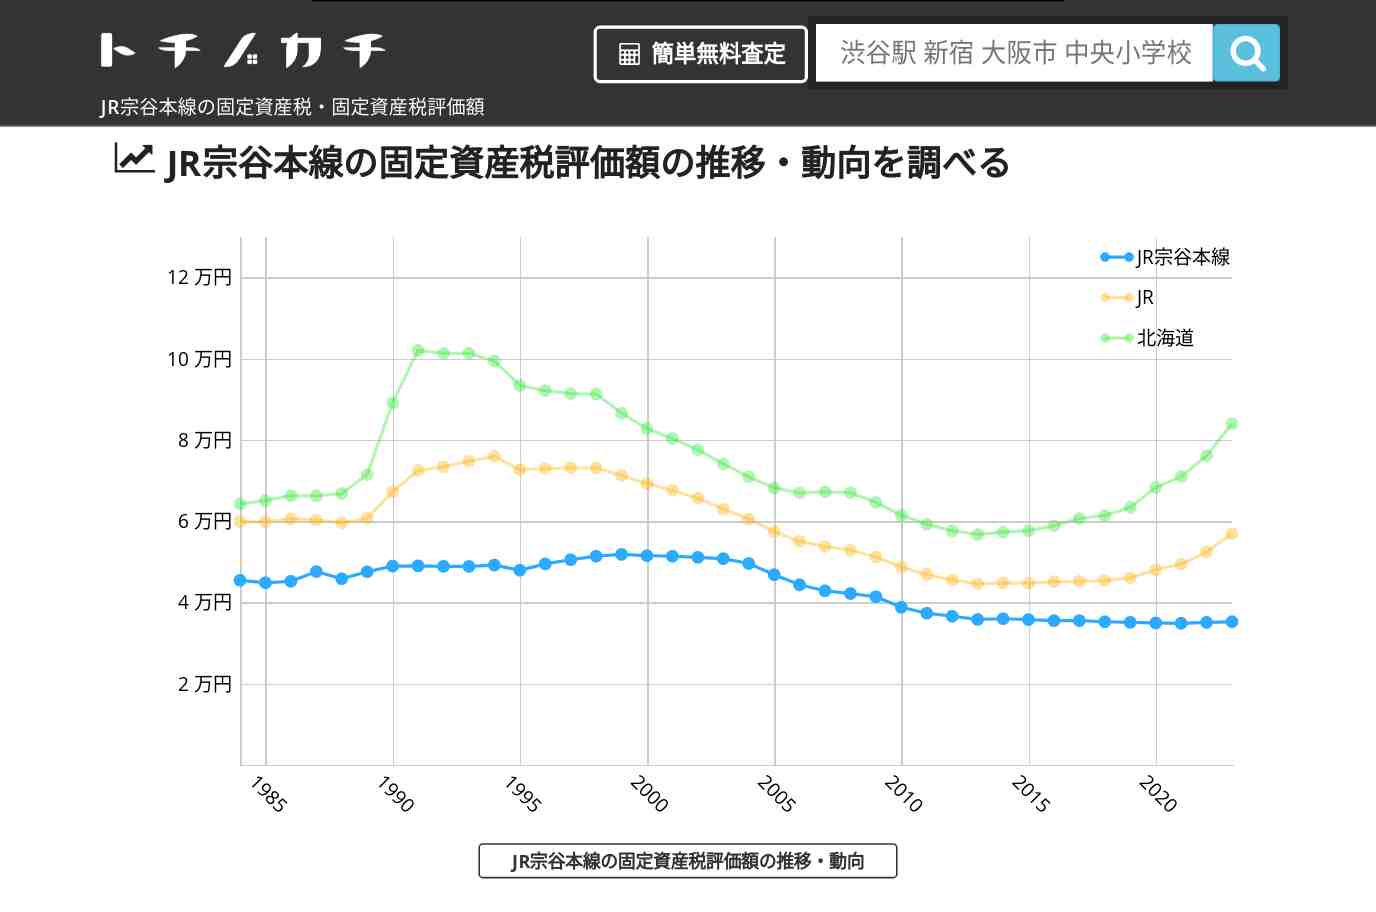 JR宗谷本線(JR)の固定資産税・固定資産税評価額 | トチノカチ